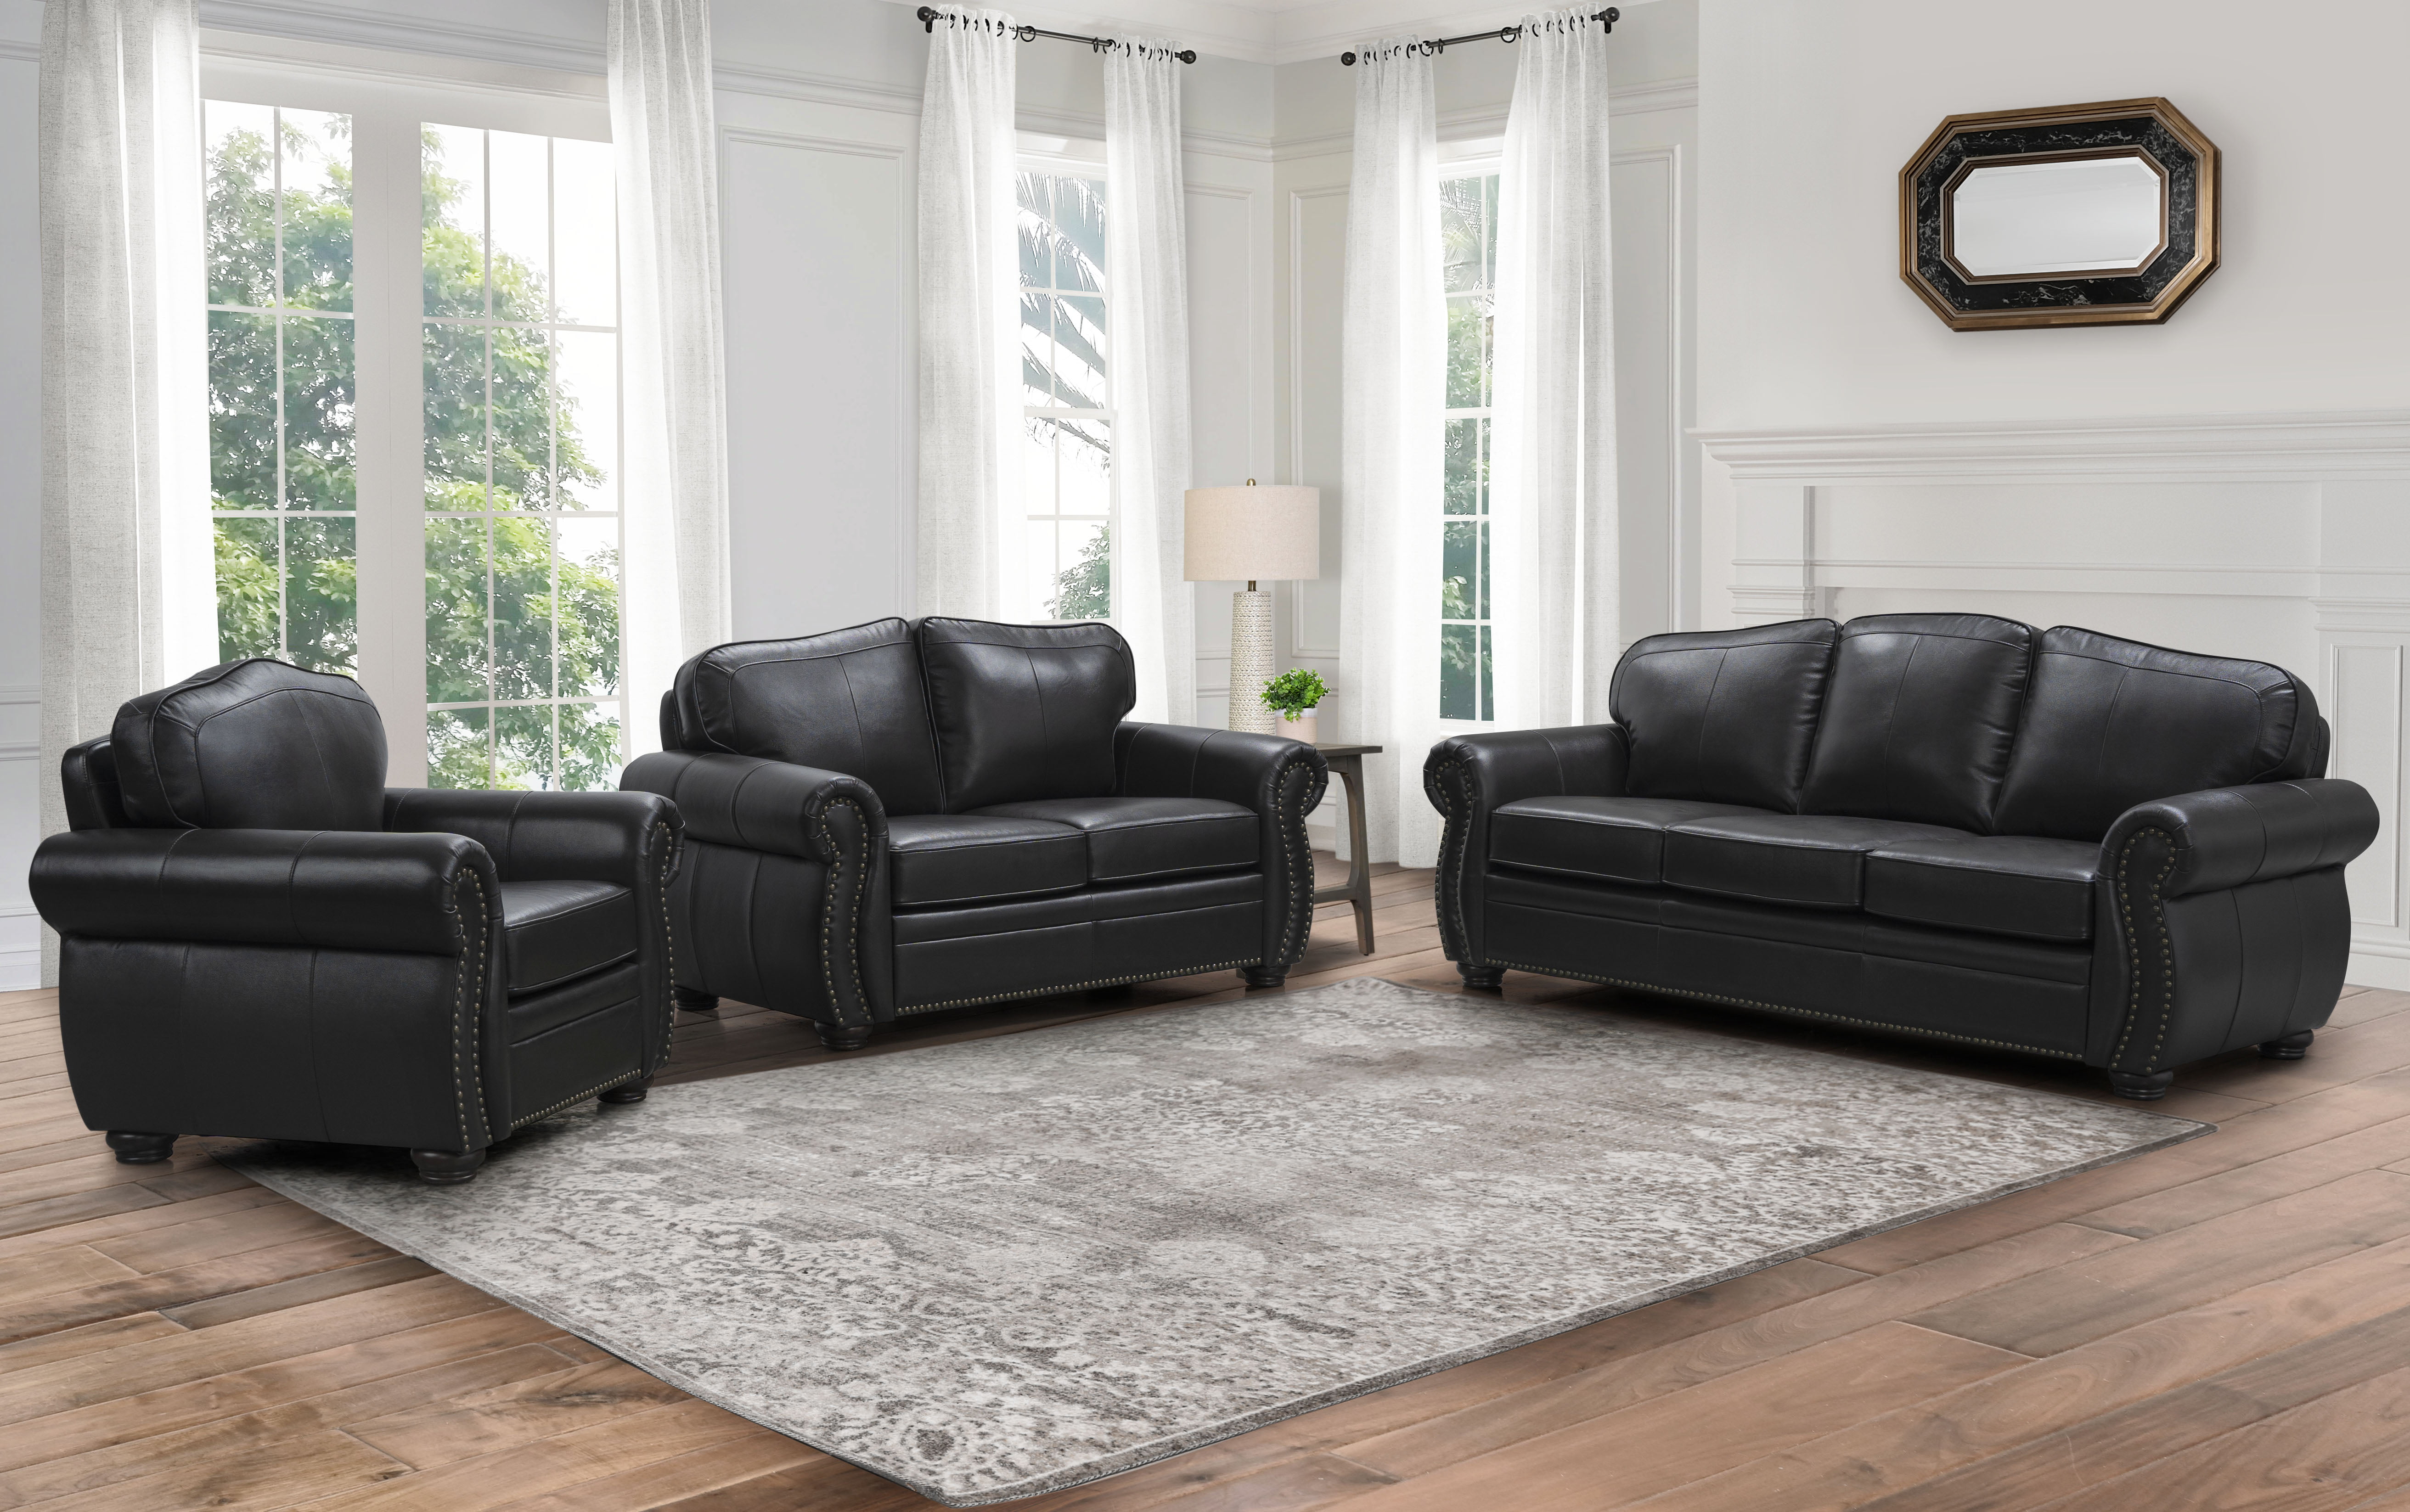 kingston devon leather sofa